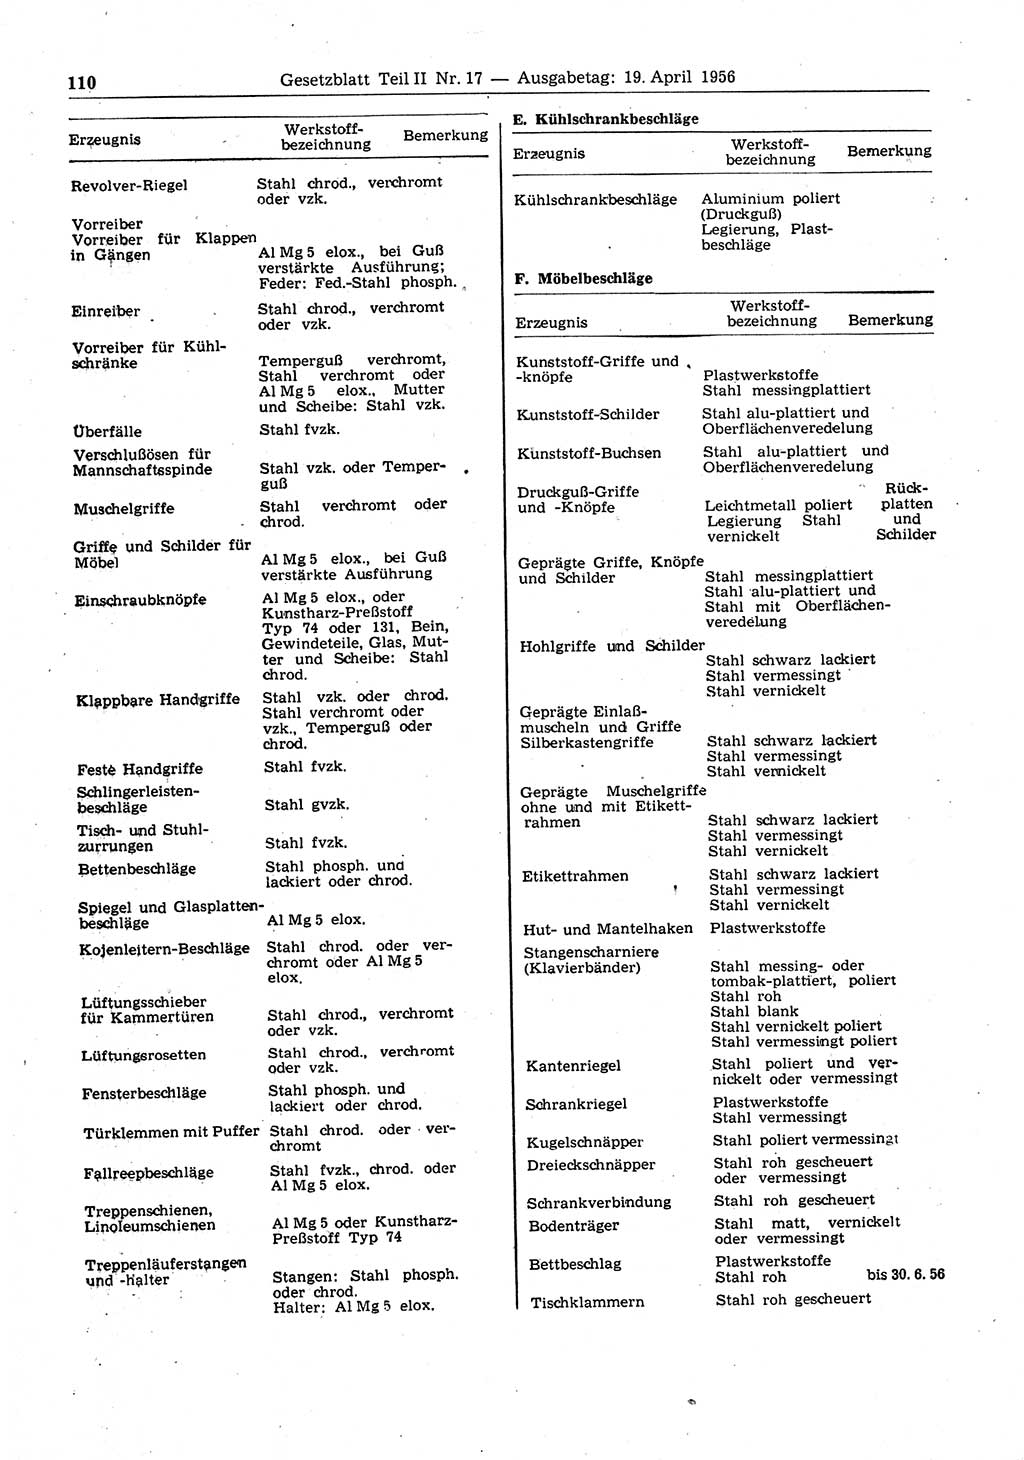 Gesetzblatt (GBl.) der Deutschen Demokratischen Republik (DDR) Teil ⅠⅠ 1956, Seite 110 (GBl. DDR ⅠⅠ 1956, S. 110)